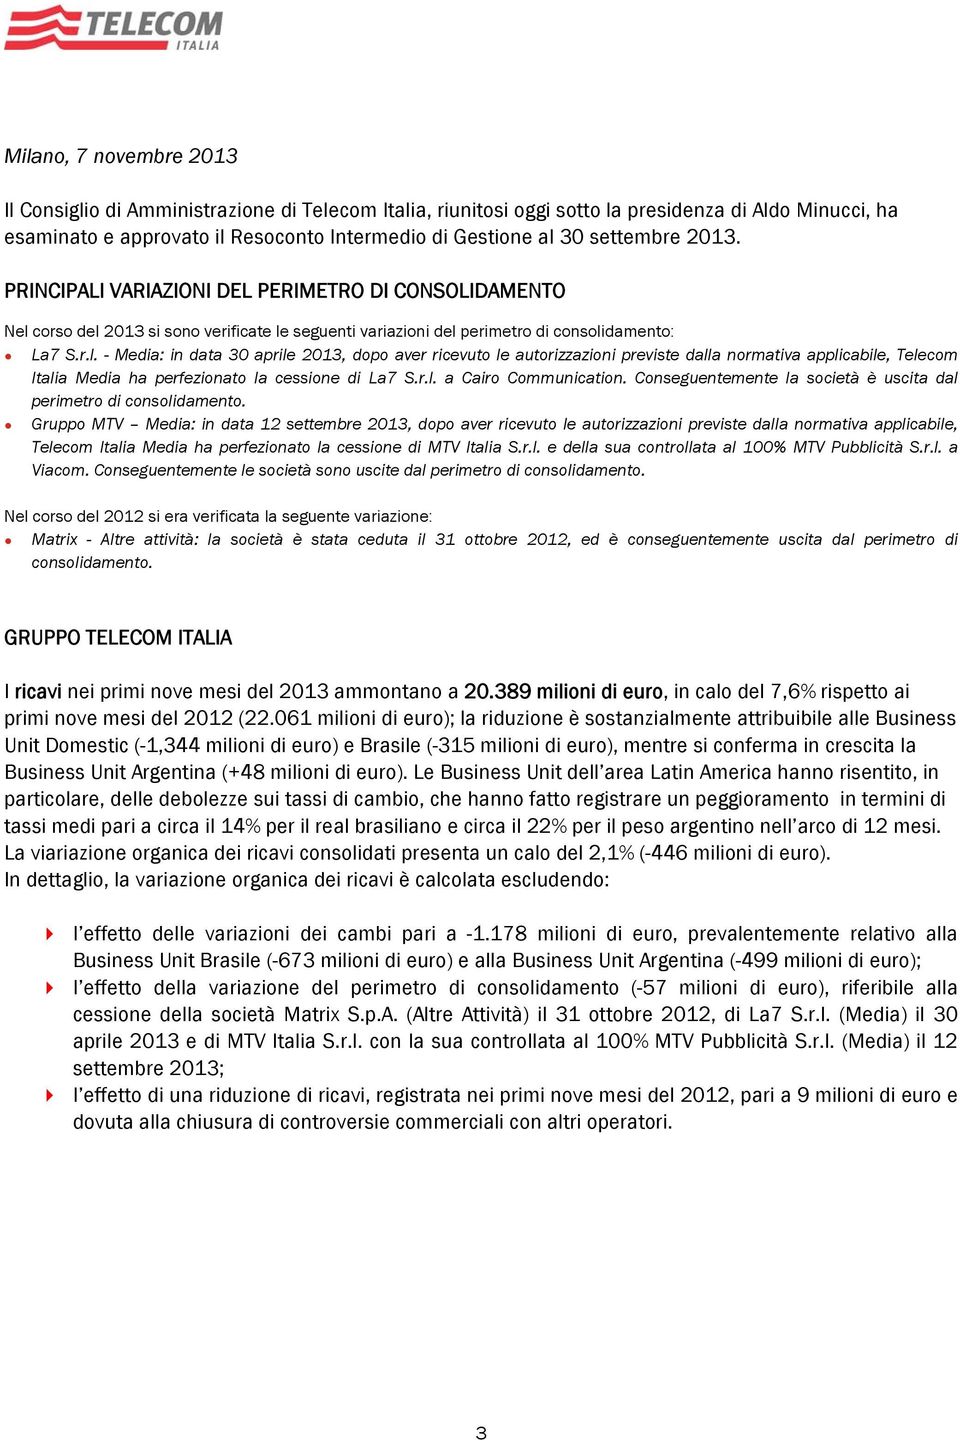 corso del 2013 si sono verificate le seguenti variazioni del perimetro di consolidamento: La7 S.r.l. - Media: in data 30 aprile 2013, dopo aver ricevuto le autorizzazioni previste dalla normativa applicabile, Telecom Italia Media ha perfezionato la cessione di La7 S.